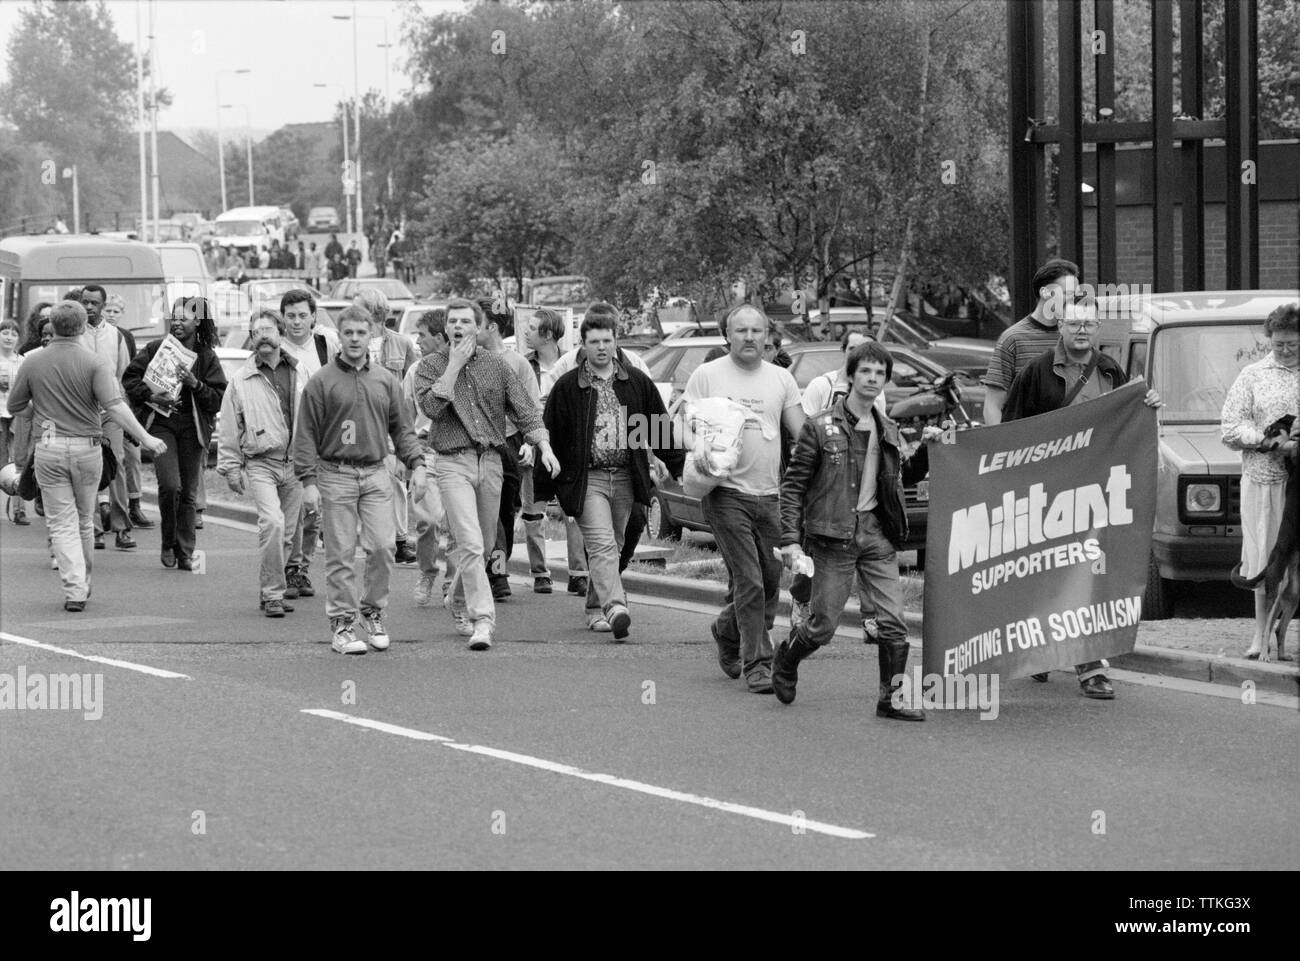 Une contre-manifestation mars dans l'Est de Londres, en Angleterre, par Lewisham militant socialiste partisans, marcher contre le BNP, British National Party, un parti politique d'extrême droite actif à partir de 1982 et jusqu'à aujourd'hui. Banque D'Images